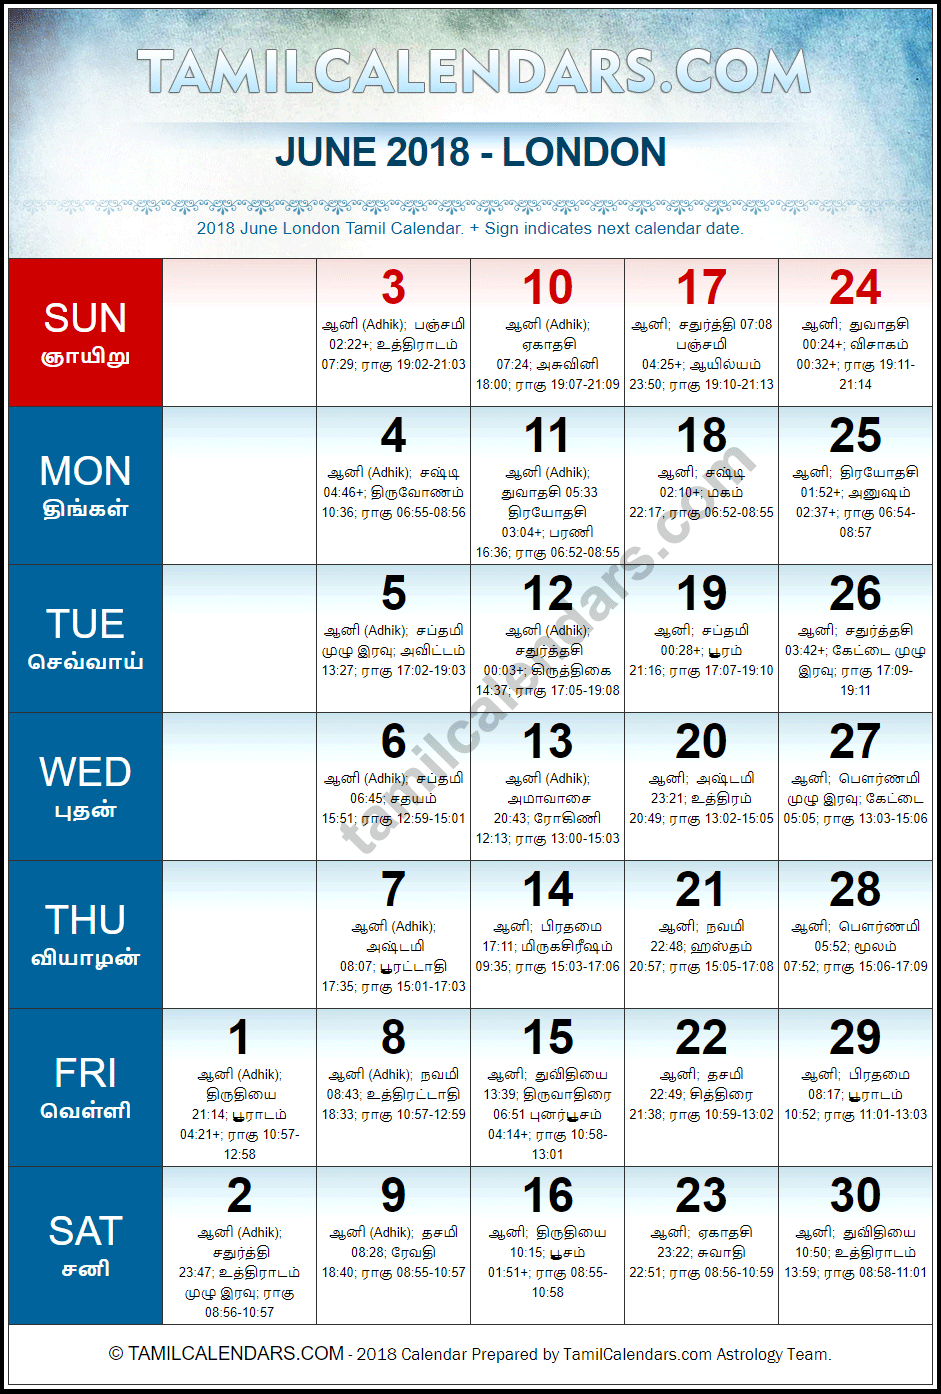 June 2018 Tamil Calendar for London, UK